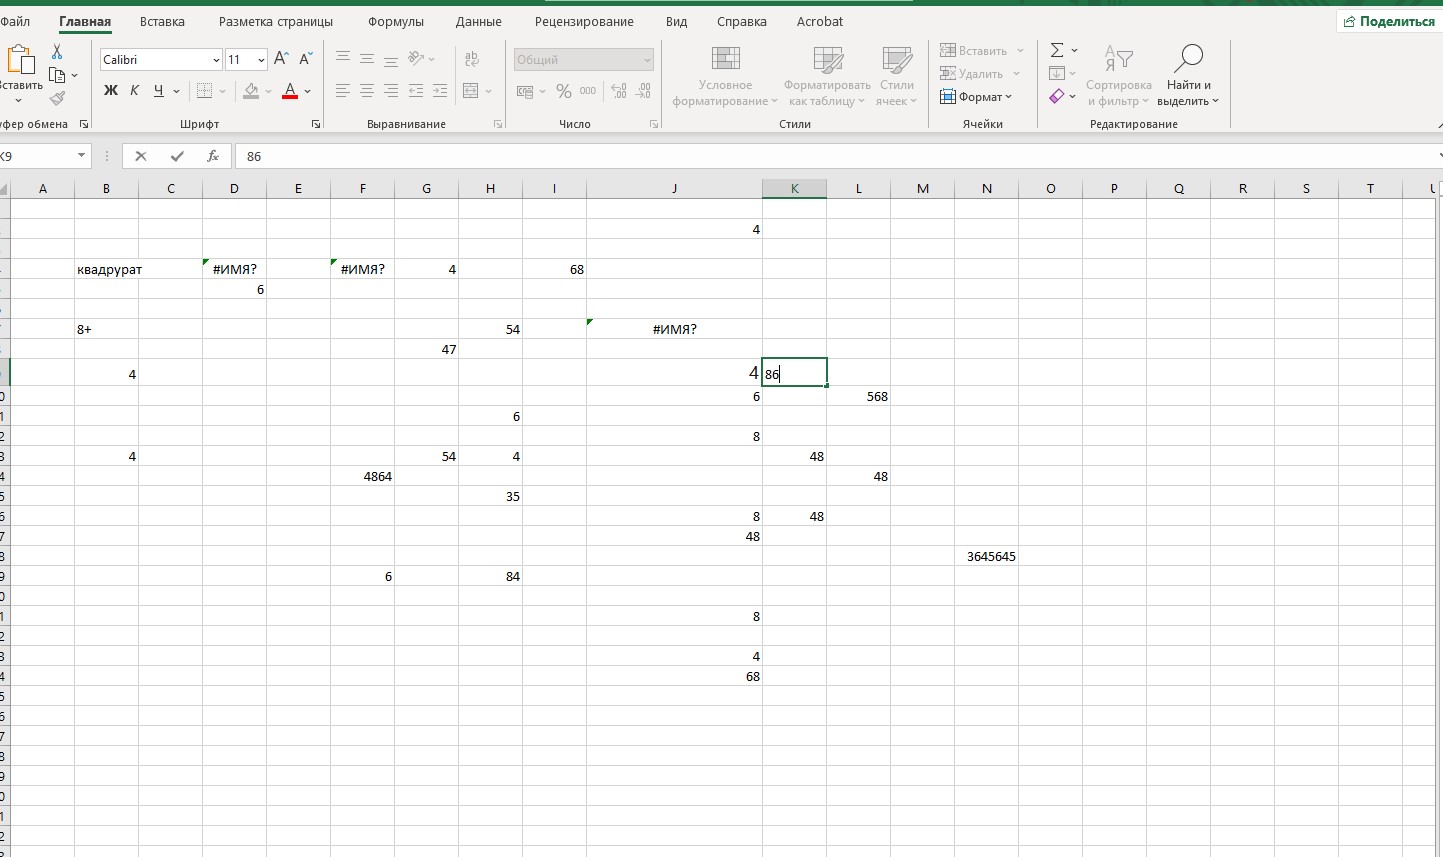 Полное руководство по полезным командам, функциям и формулам Excel для анализа данных